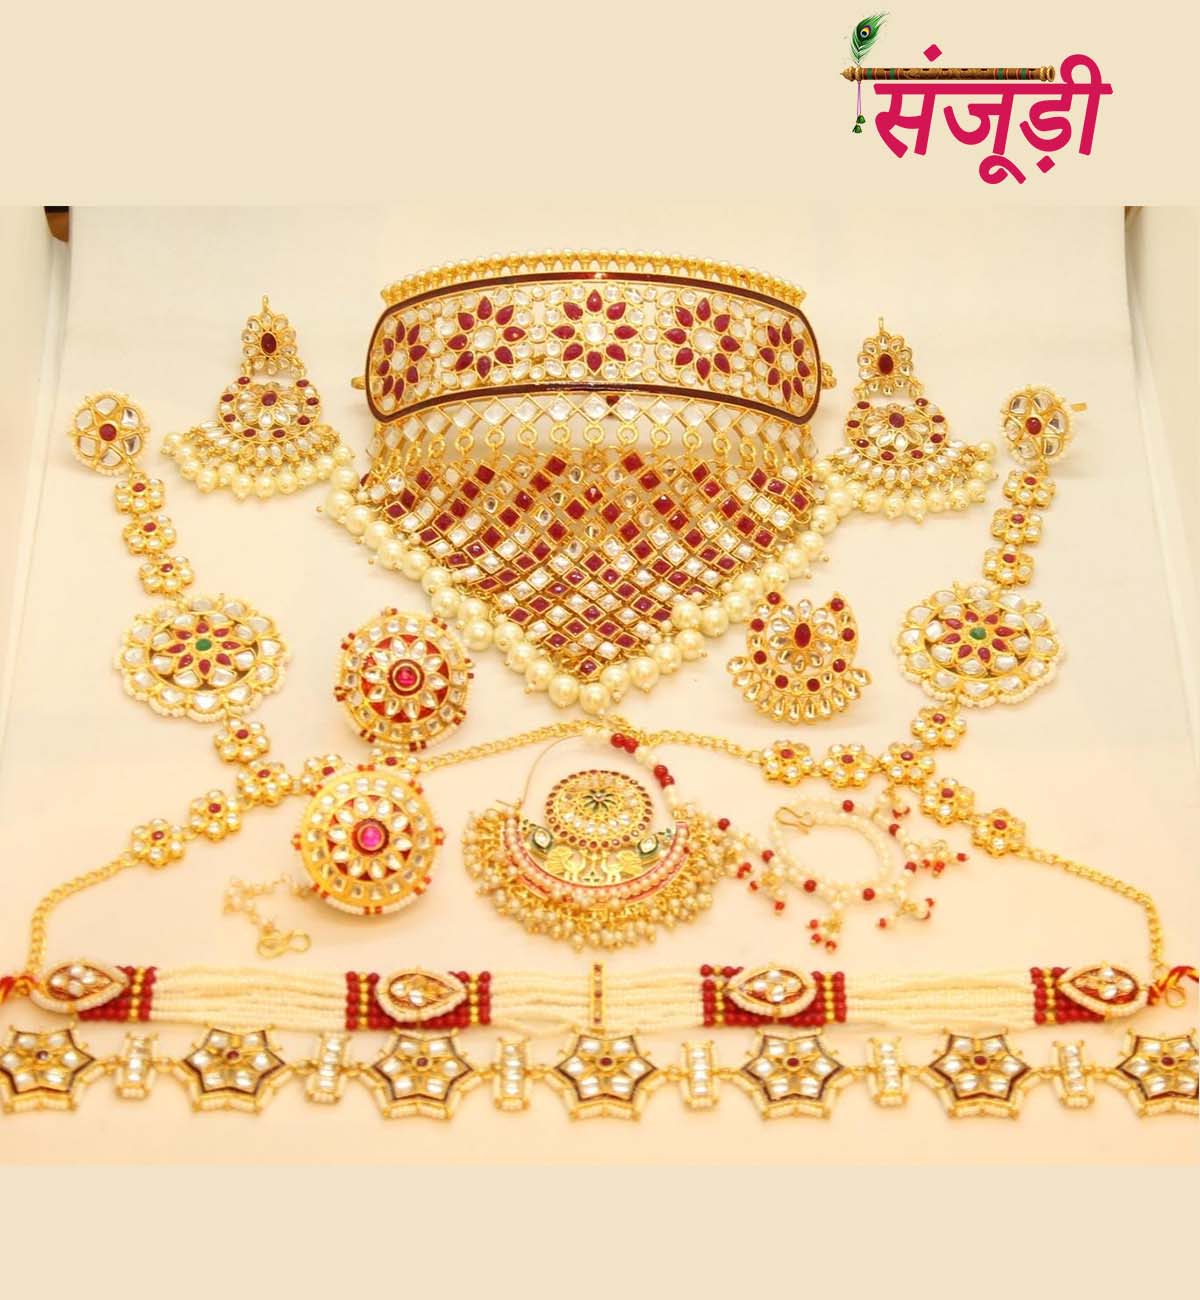 Rajputi Mini Jewellery Set in Red Kundan Work 